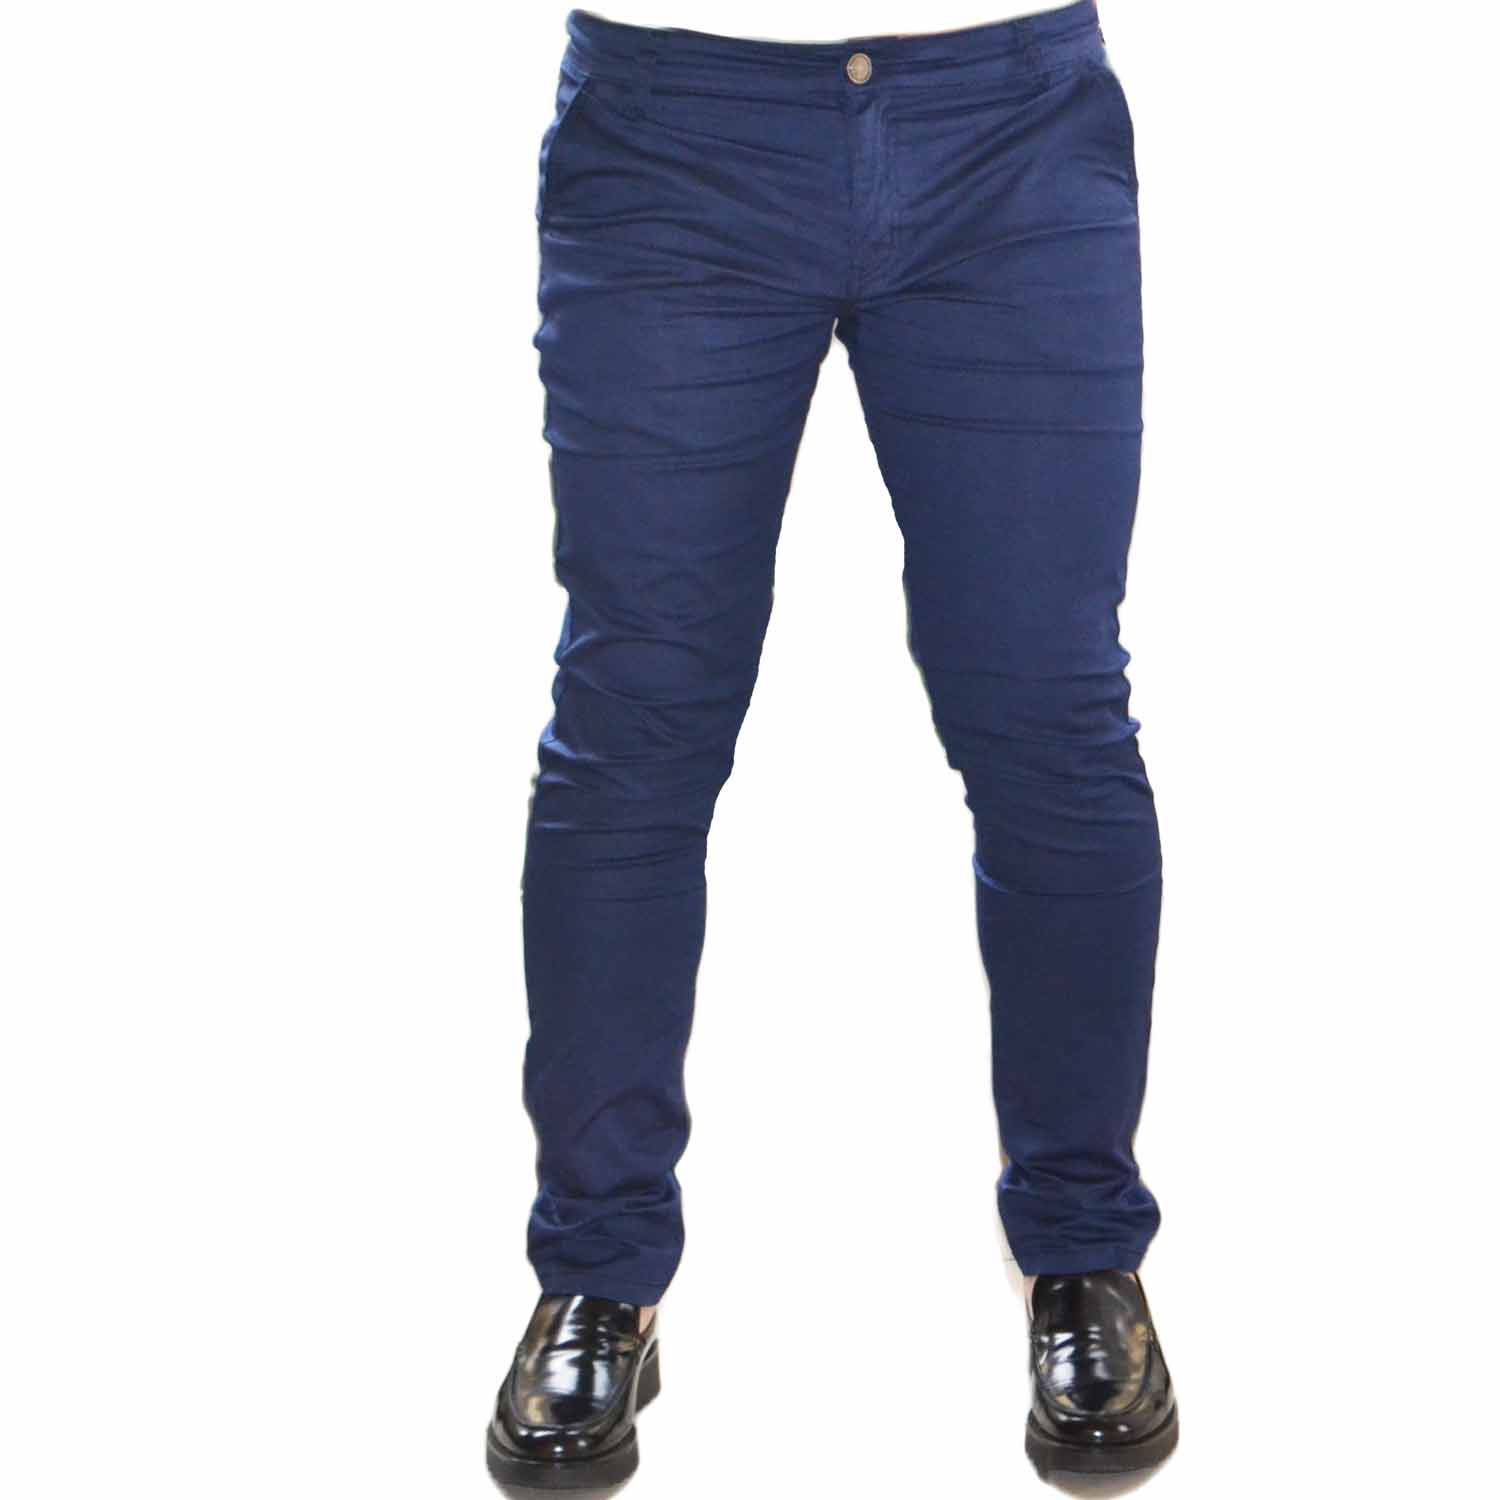 Pantalone Uomo Blu fantsia  Modello Tasca America Chino Slim Cotone Elastico classico